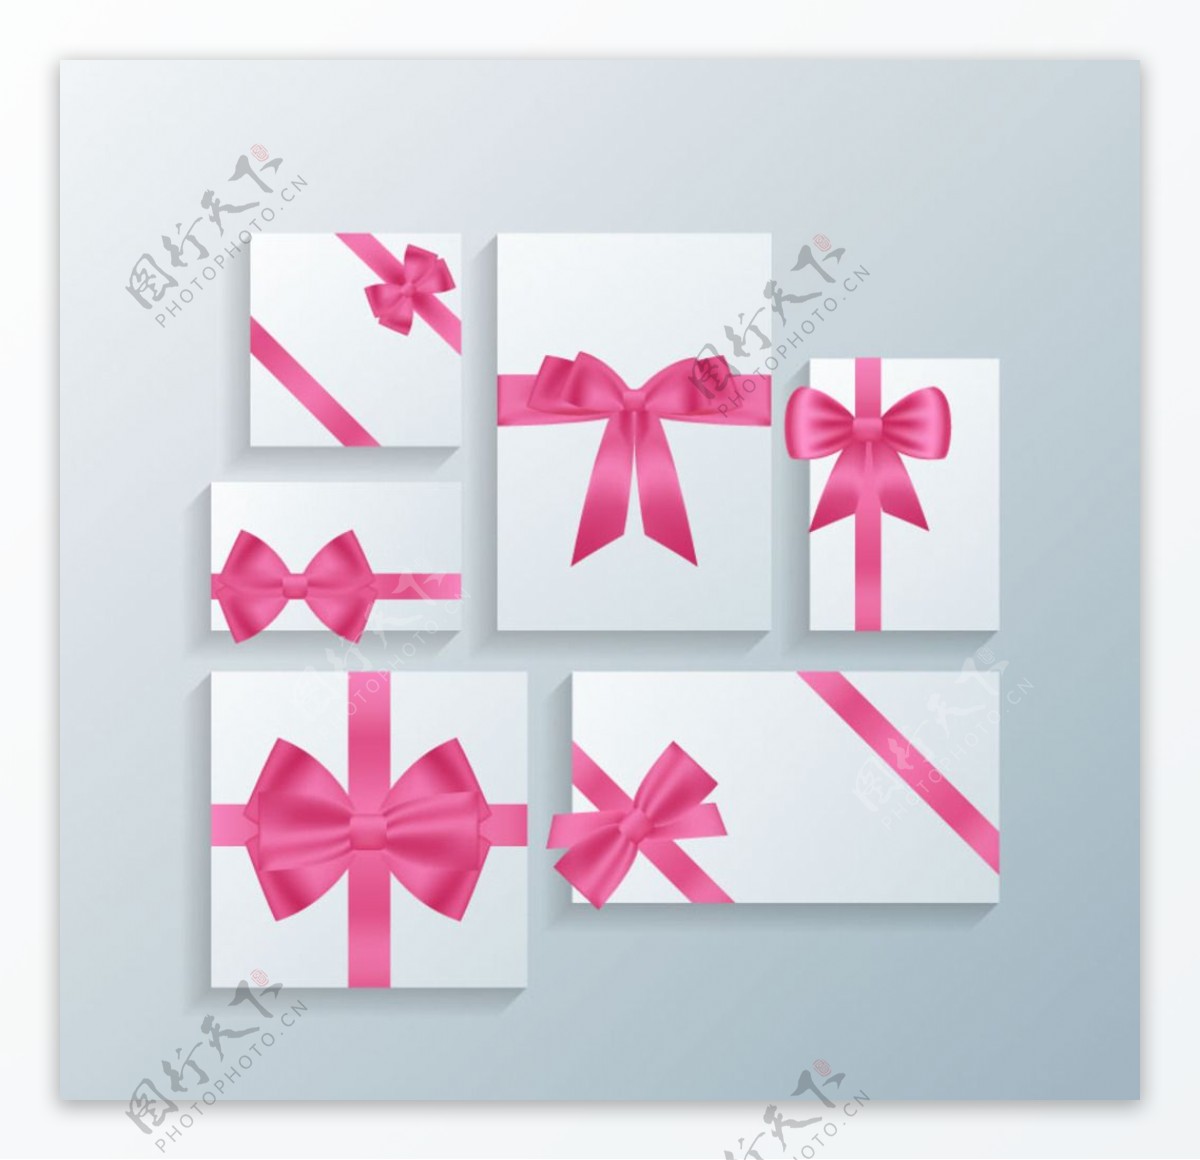 粉色蝴蝶结装饰卡片矢量素材